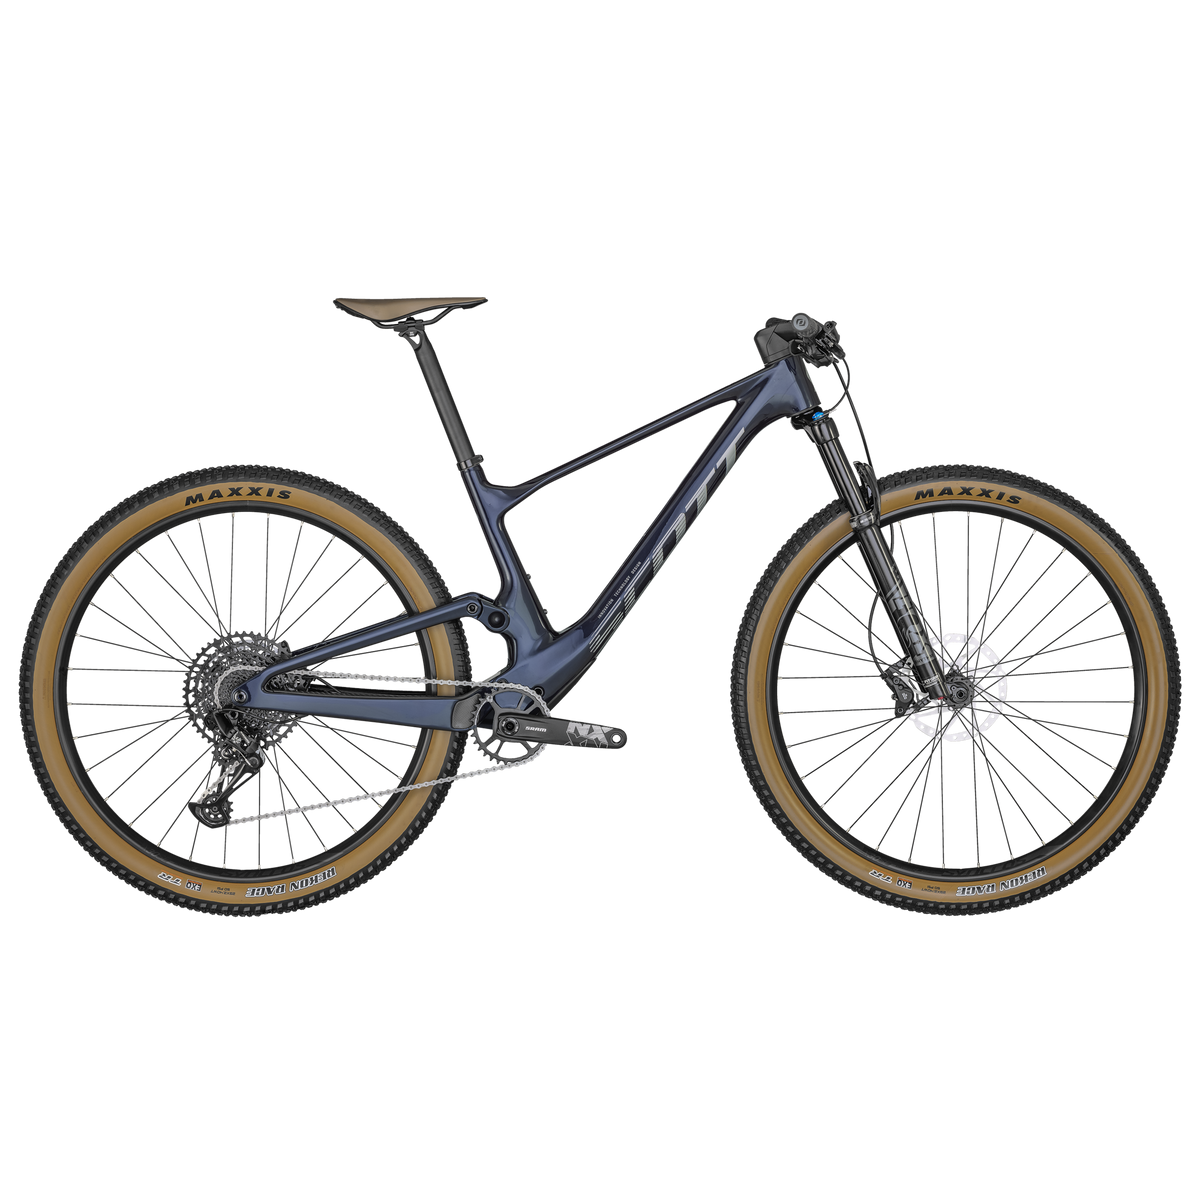 Scott Spark RC Comp Full Suspension Mountain Bike Dark Stellar Blue XL